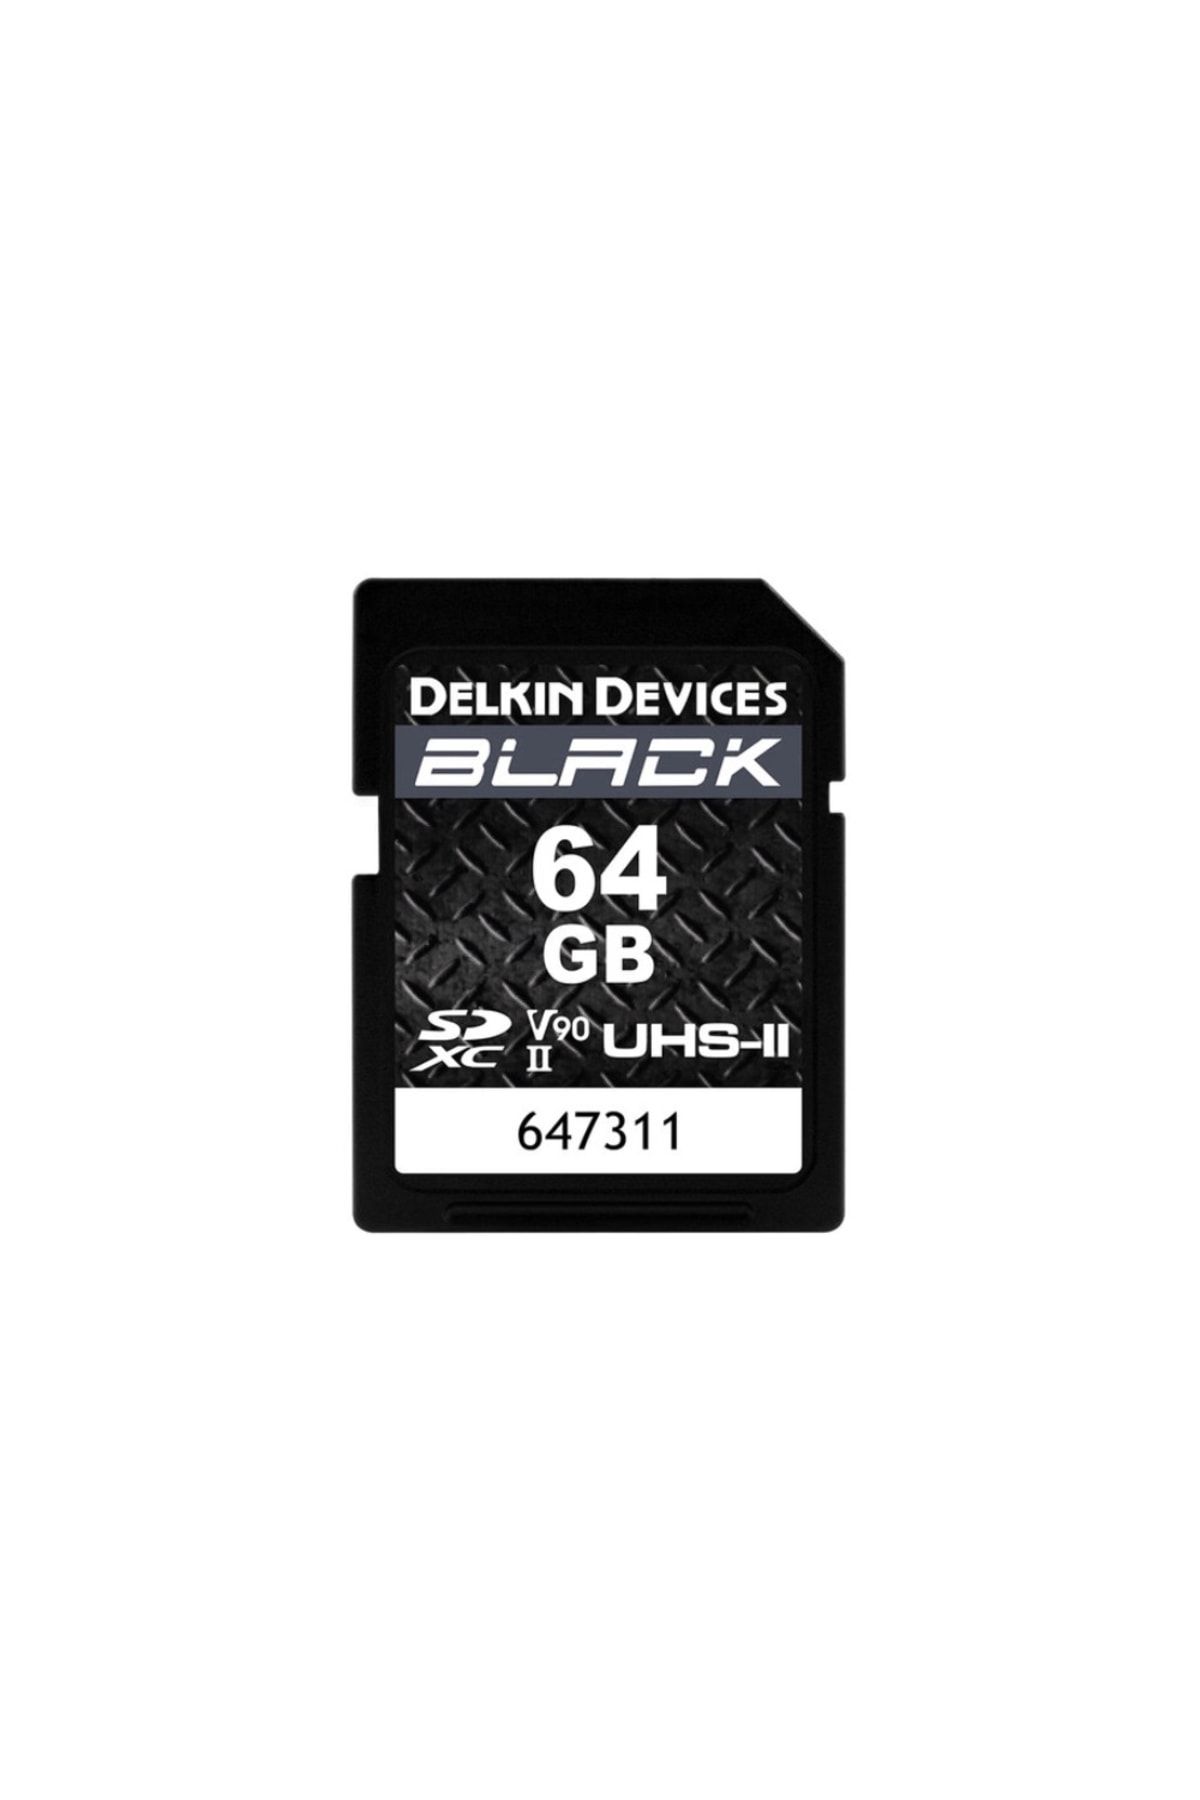 Delkin 64gb Black Uhs-ıı (V90) Sdxc Hafıza Kartı